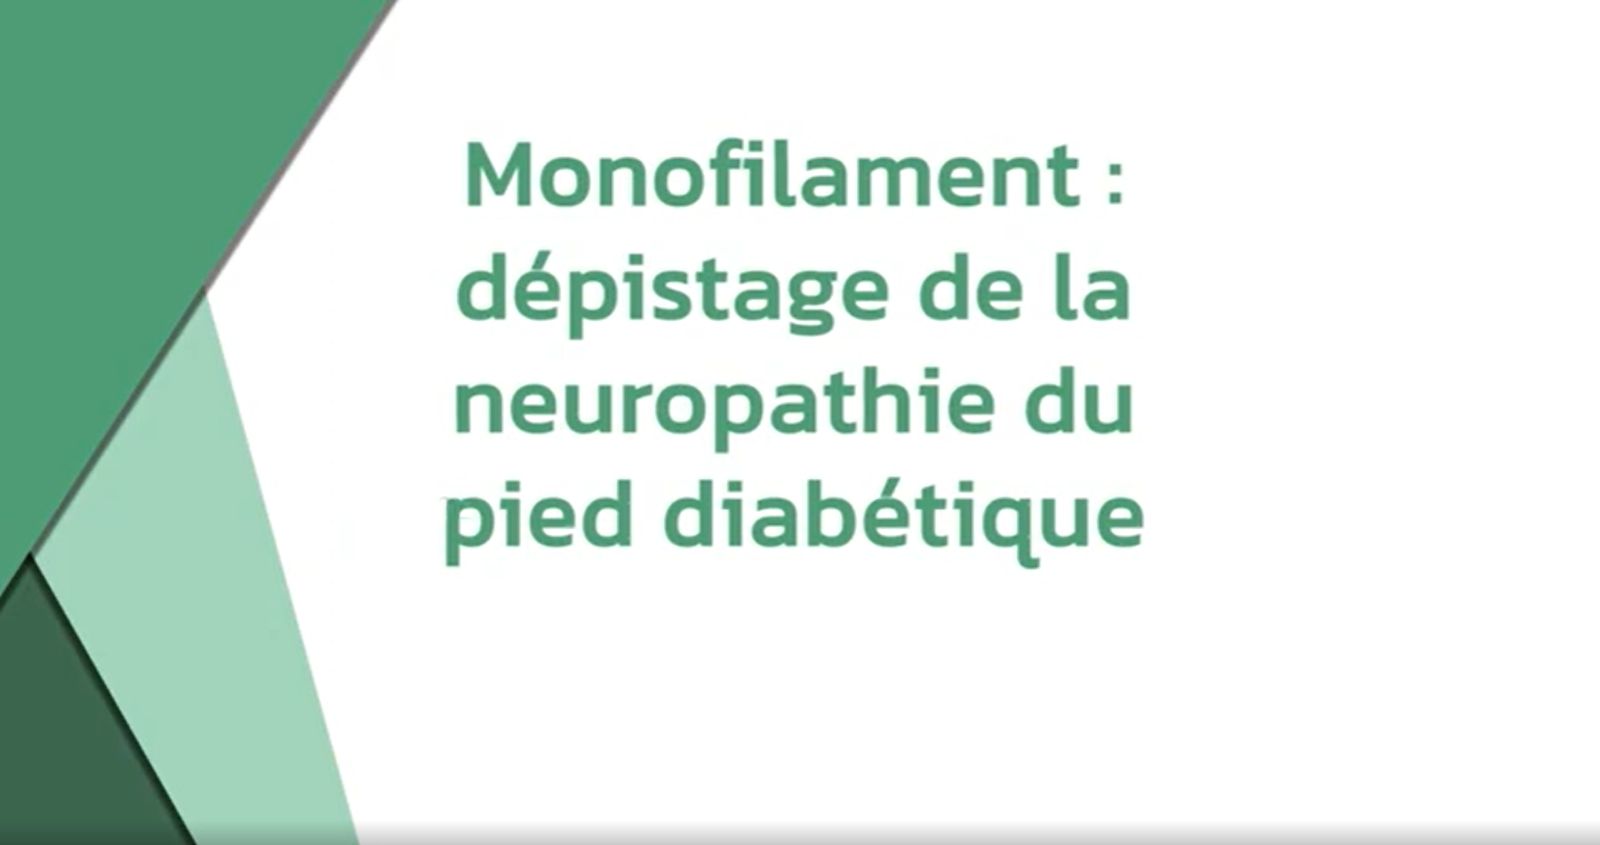 Monofilament : dépistage de la neuropathie du pied diabétique (Dr Kevin Boulanger)